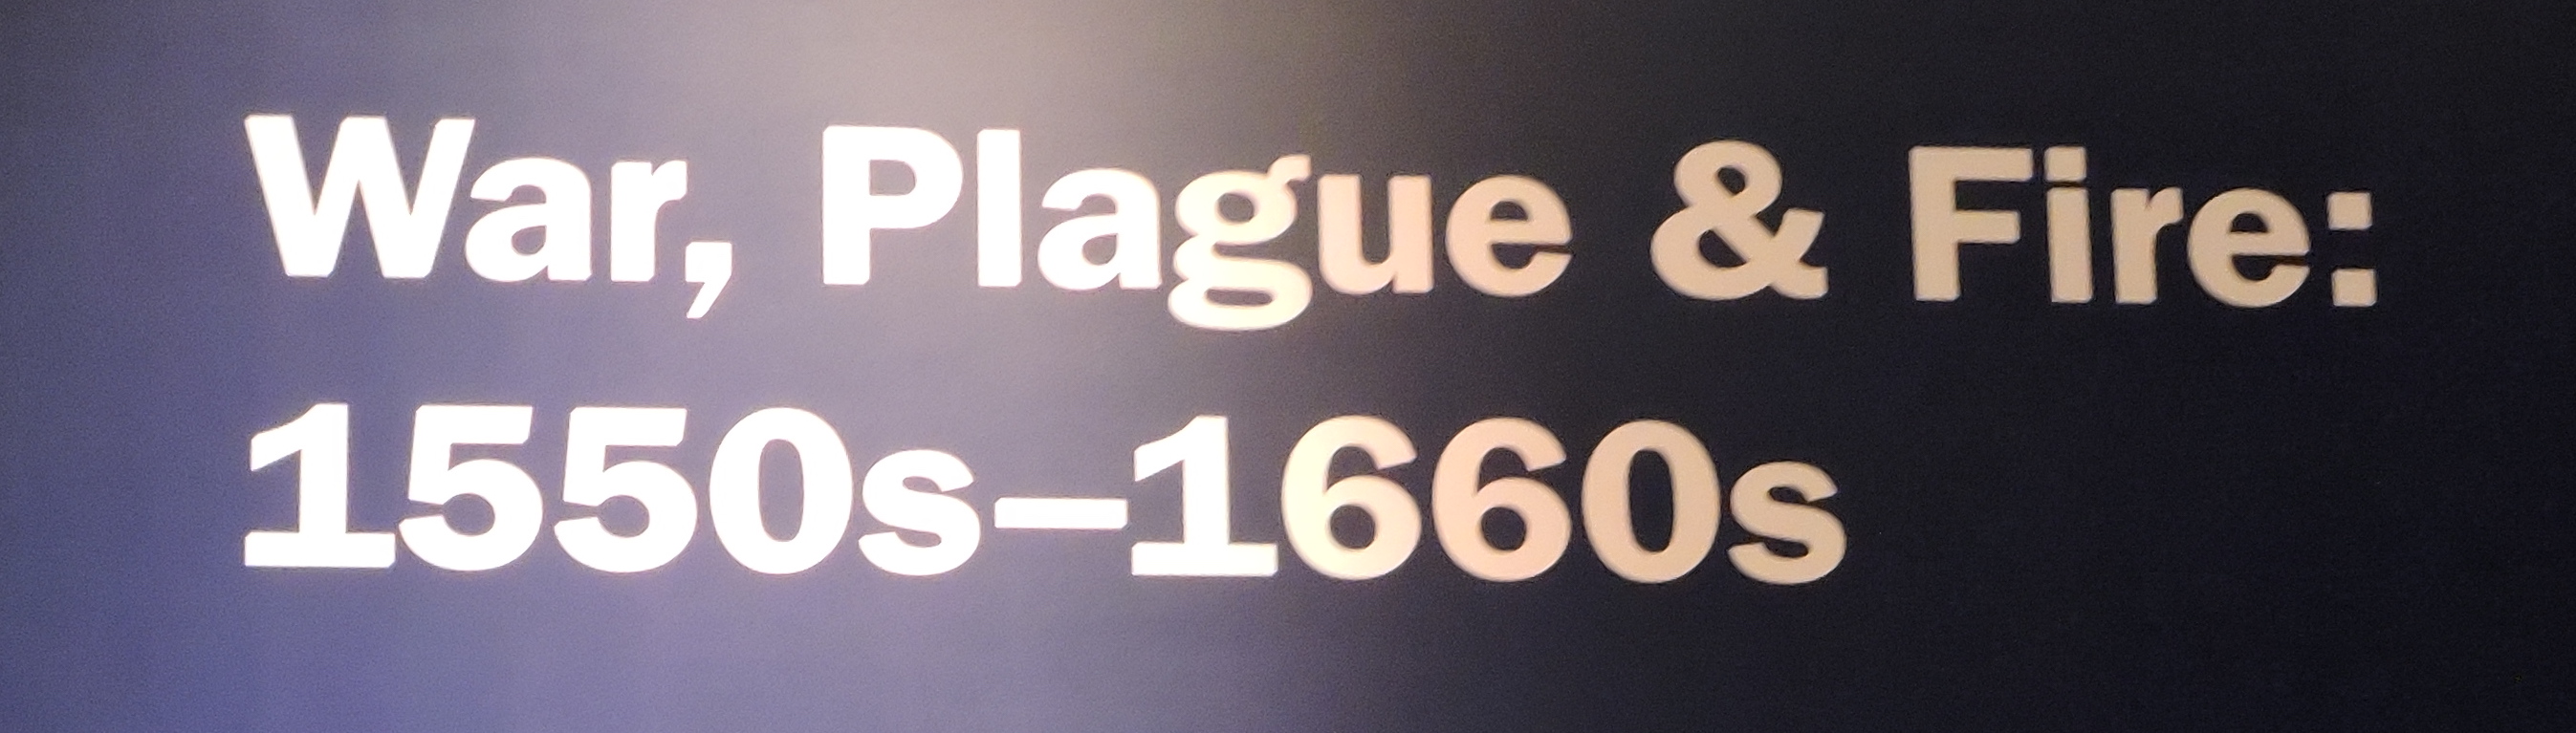 War, Plague, and Fire exhibit